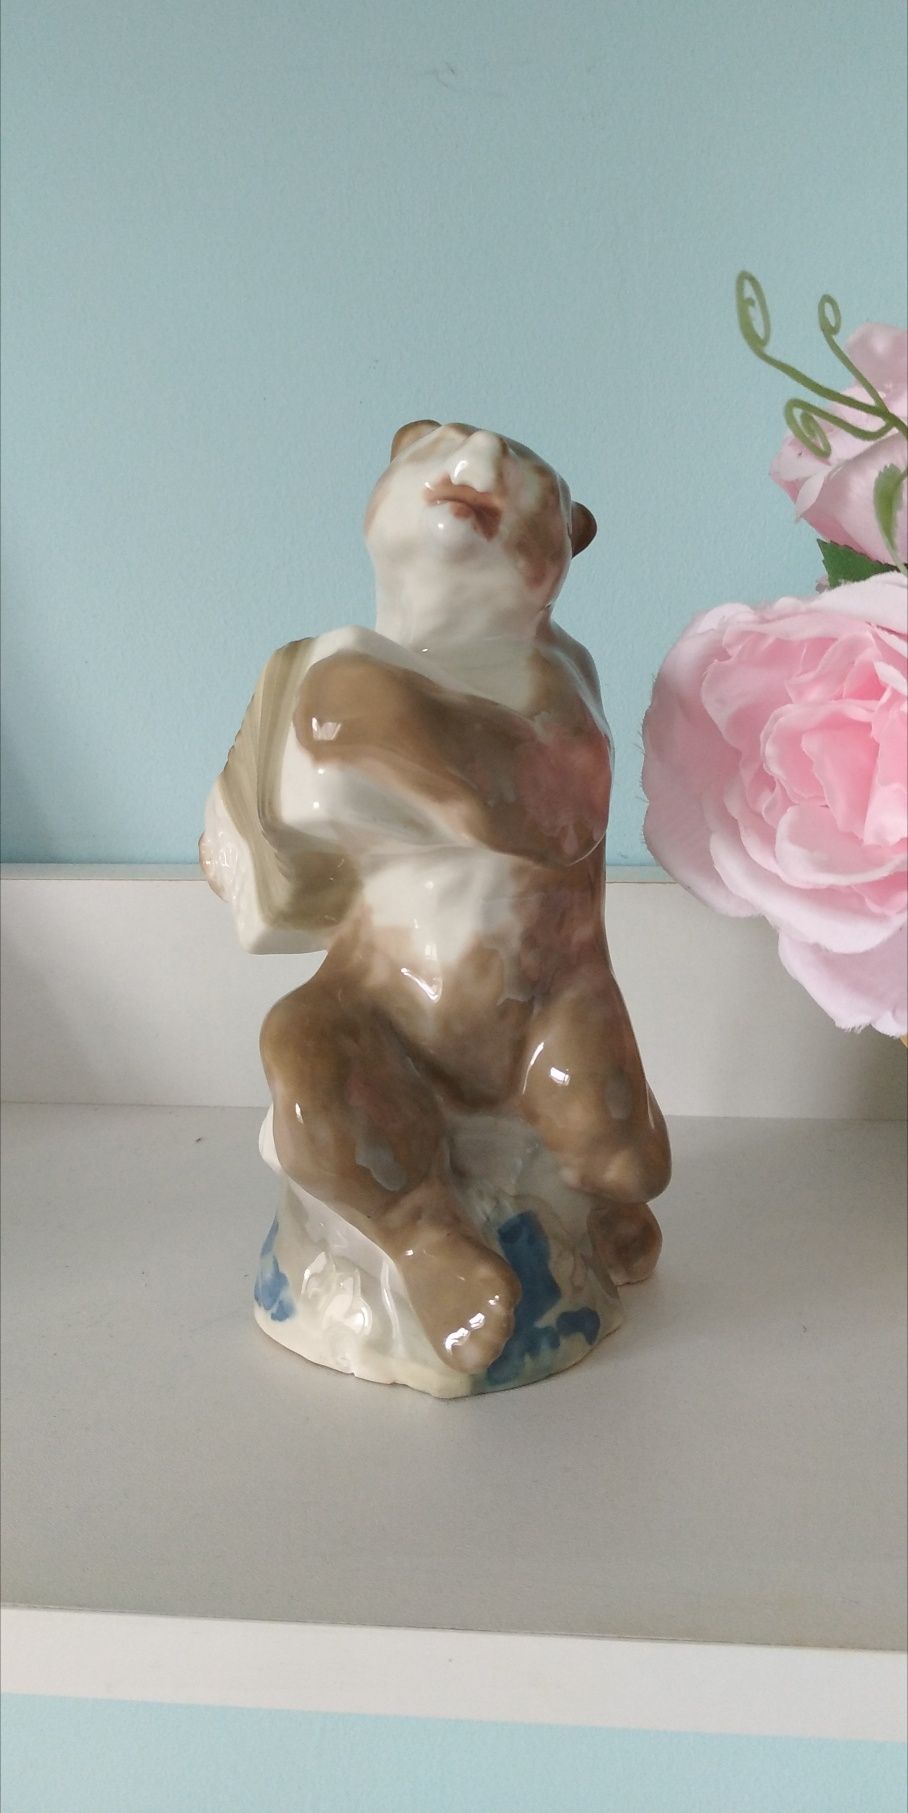 Rzadka Figurka porcelanowa  majolika Niedźwiedź Baranówka Vintage